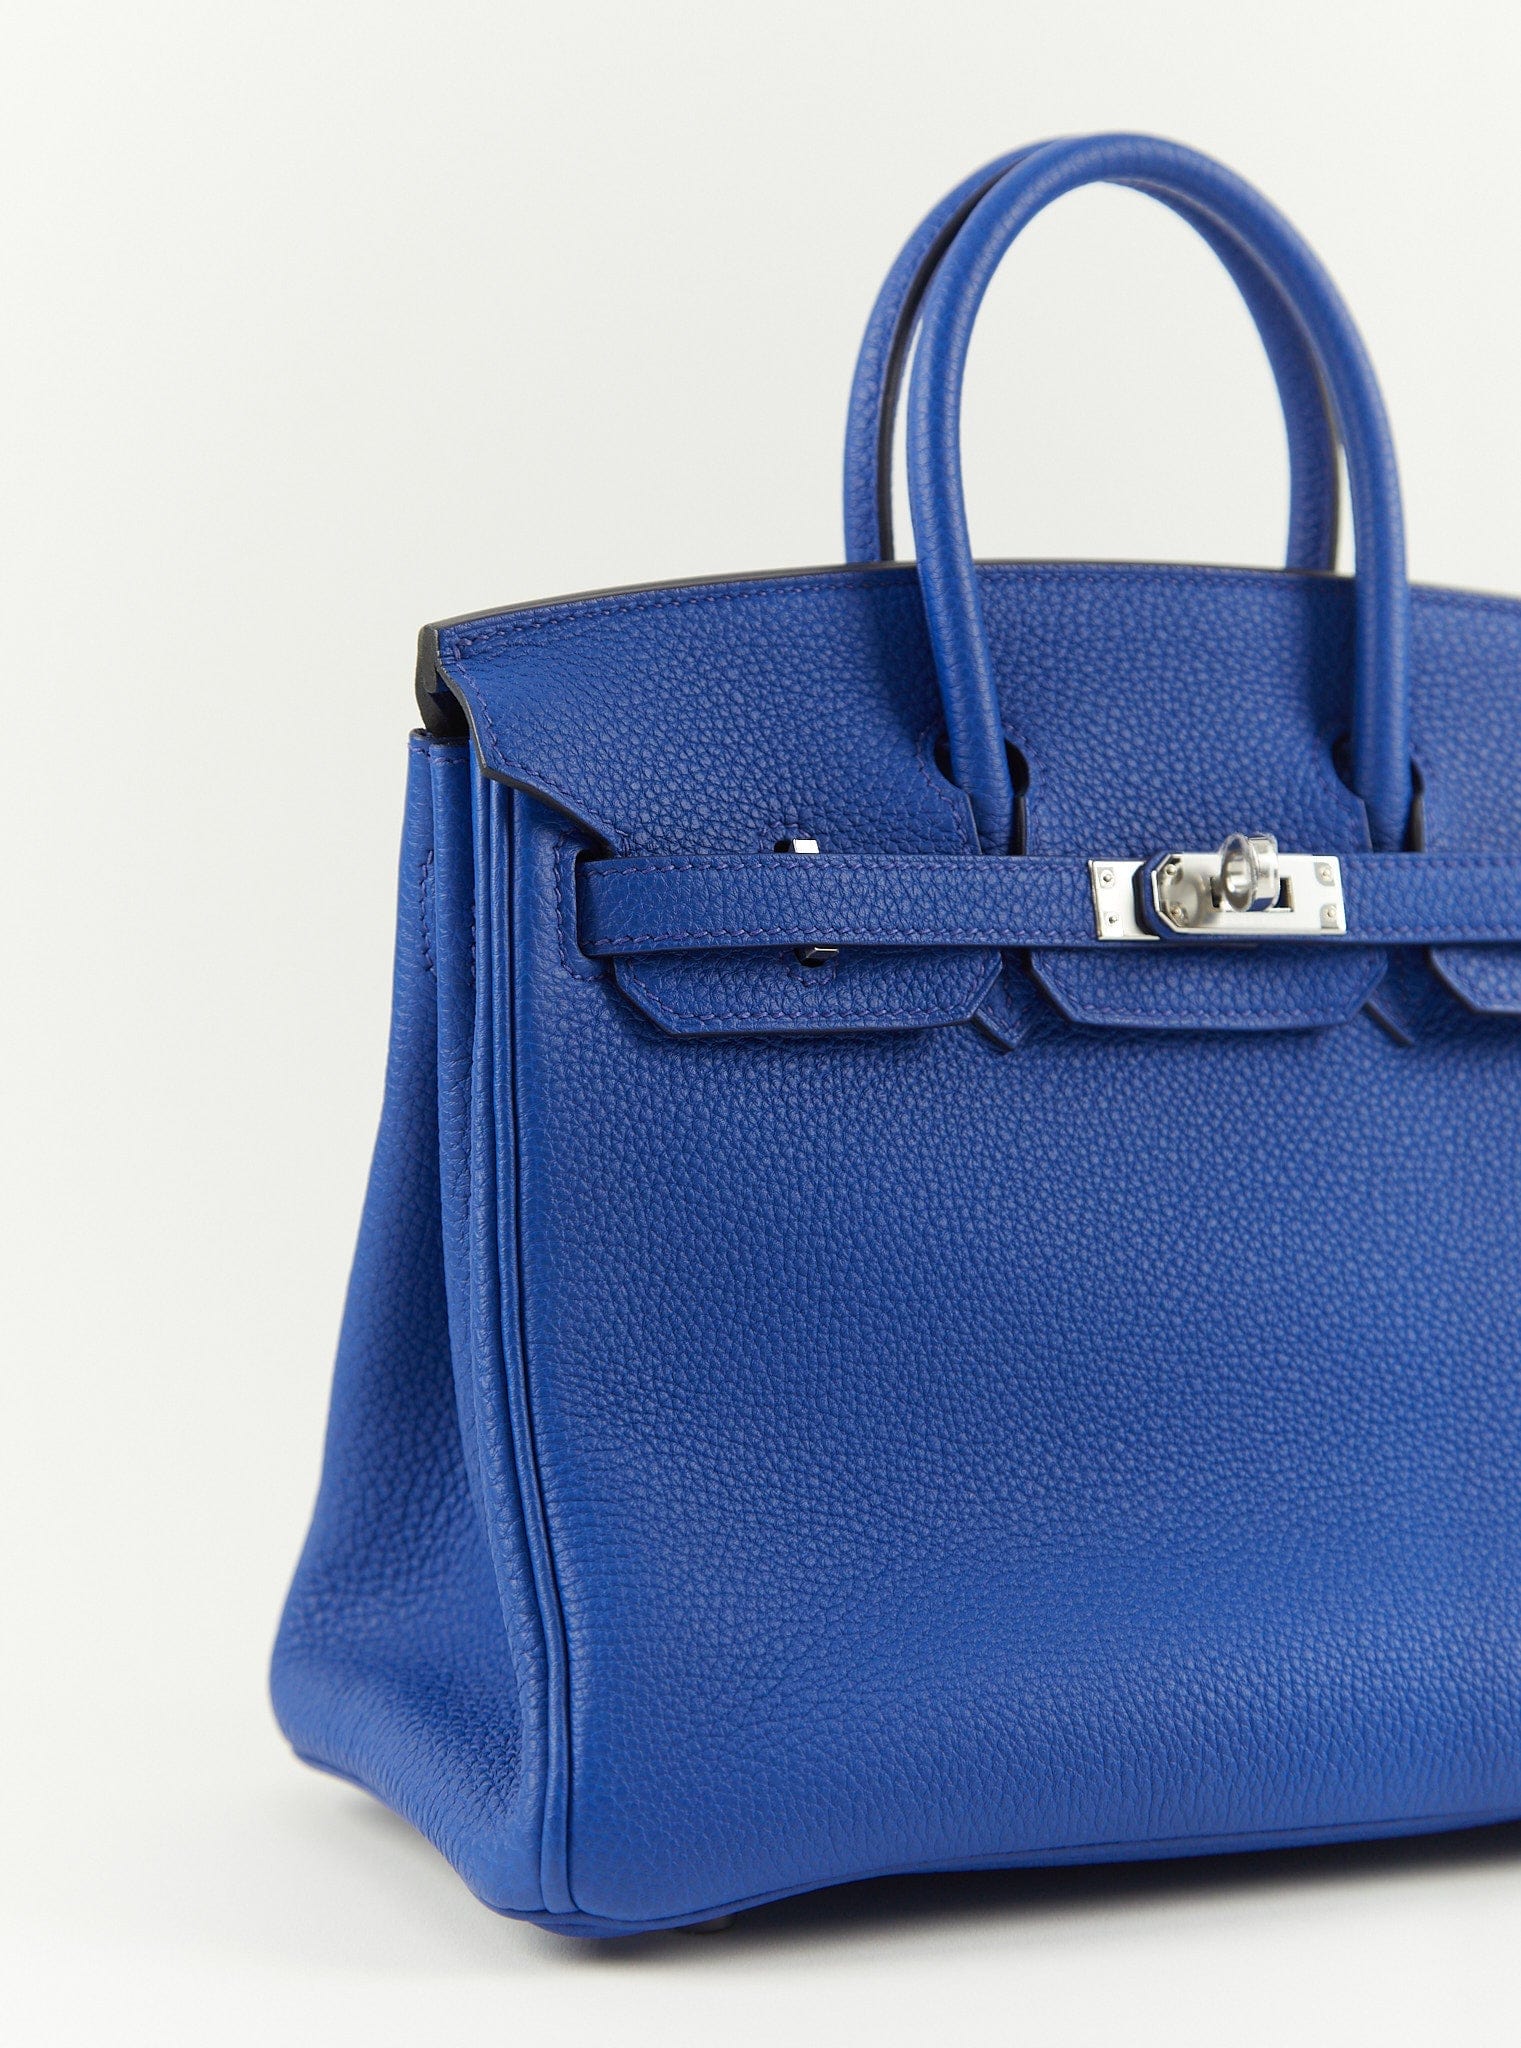 LuxuryVault HERMÈS BIRKIN 25CM BLUE ROYAL Togo Leather with Palladium Hardware